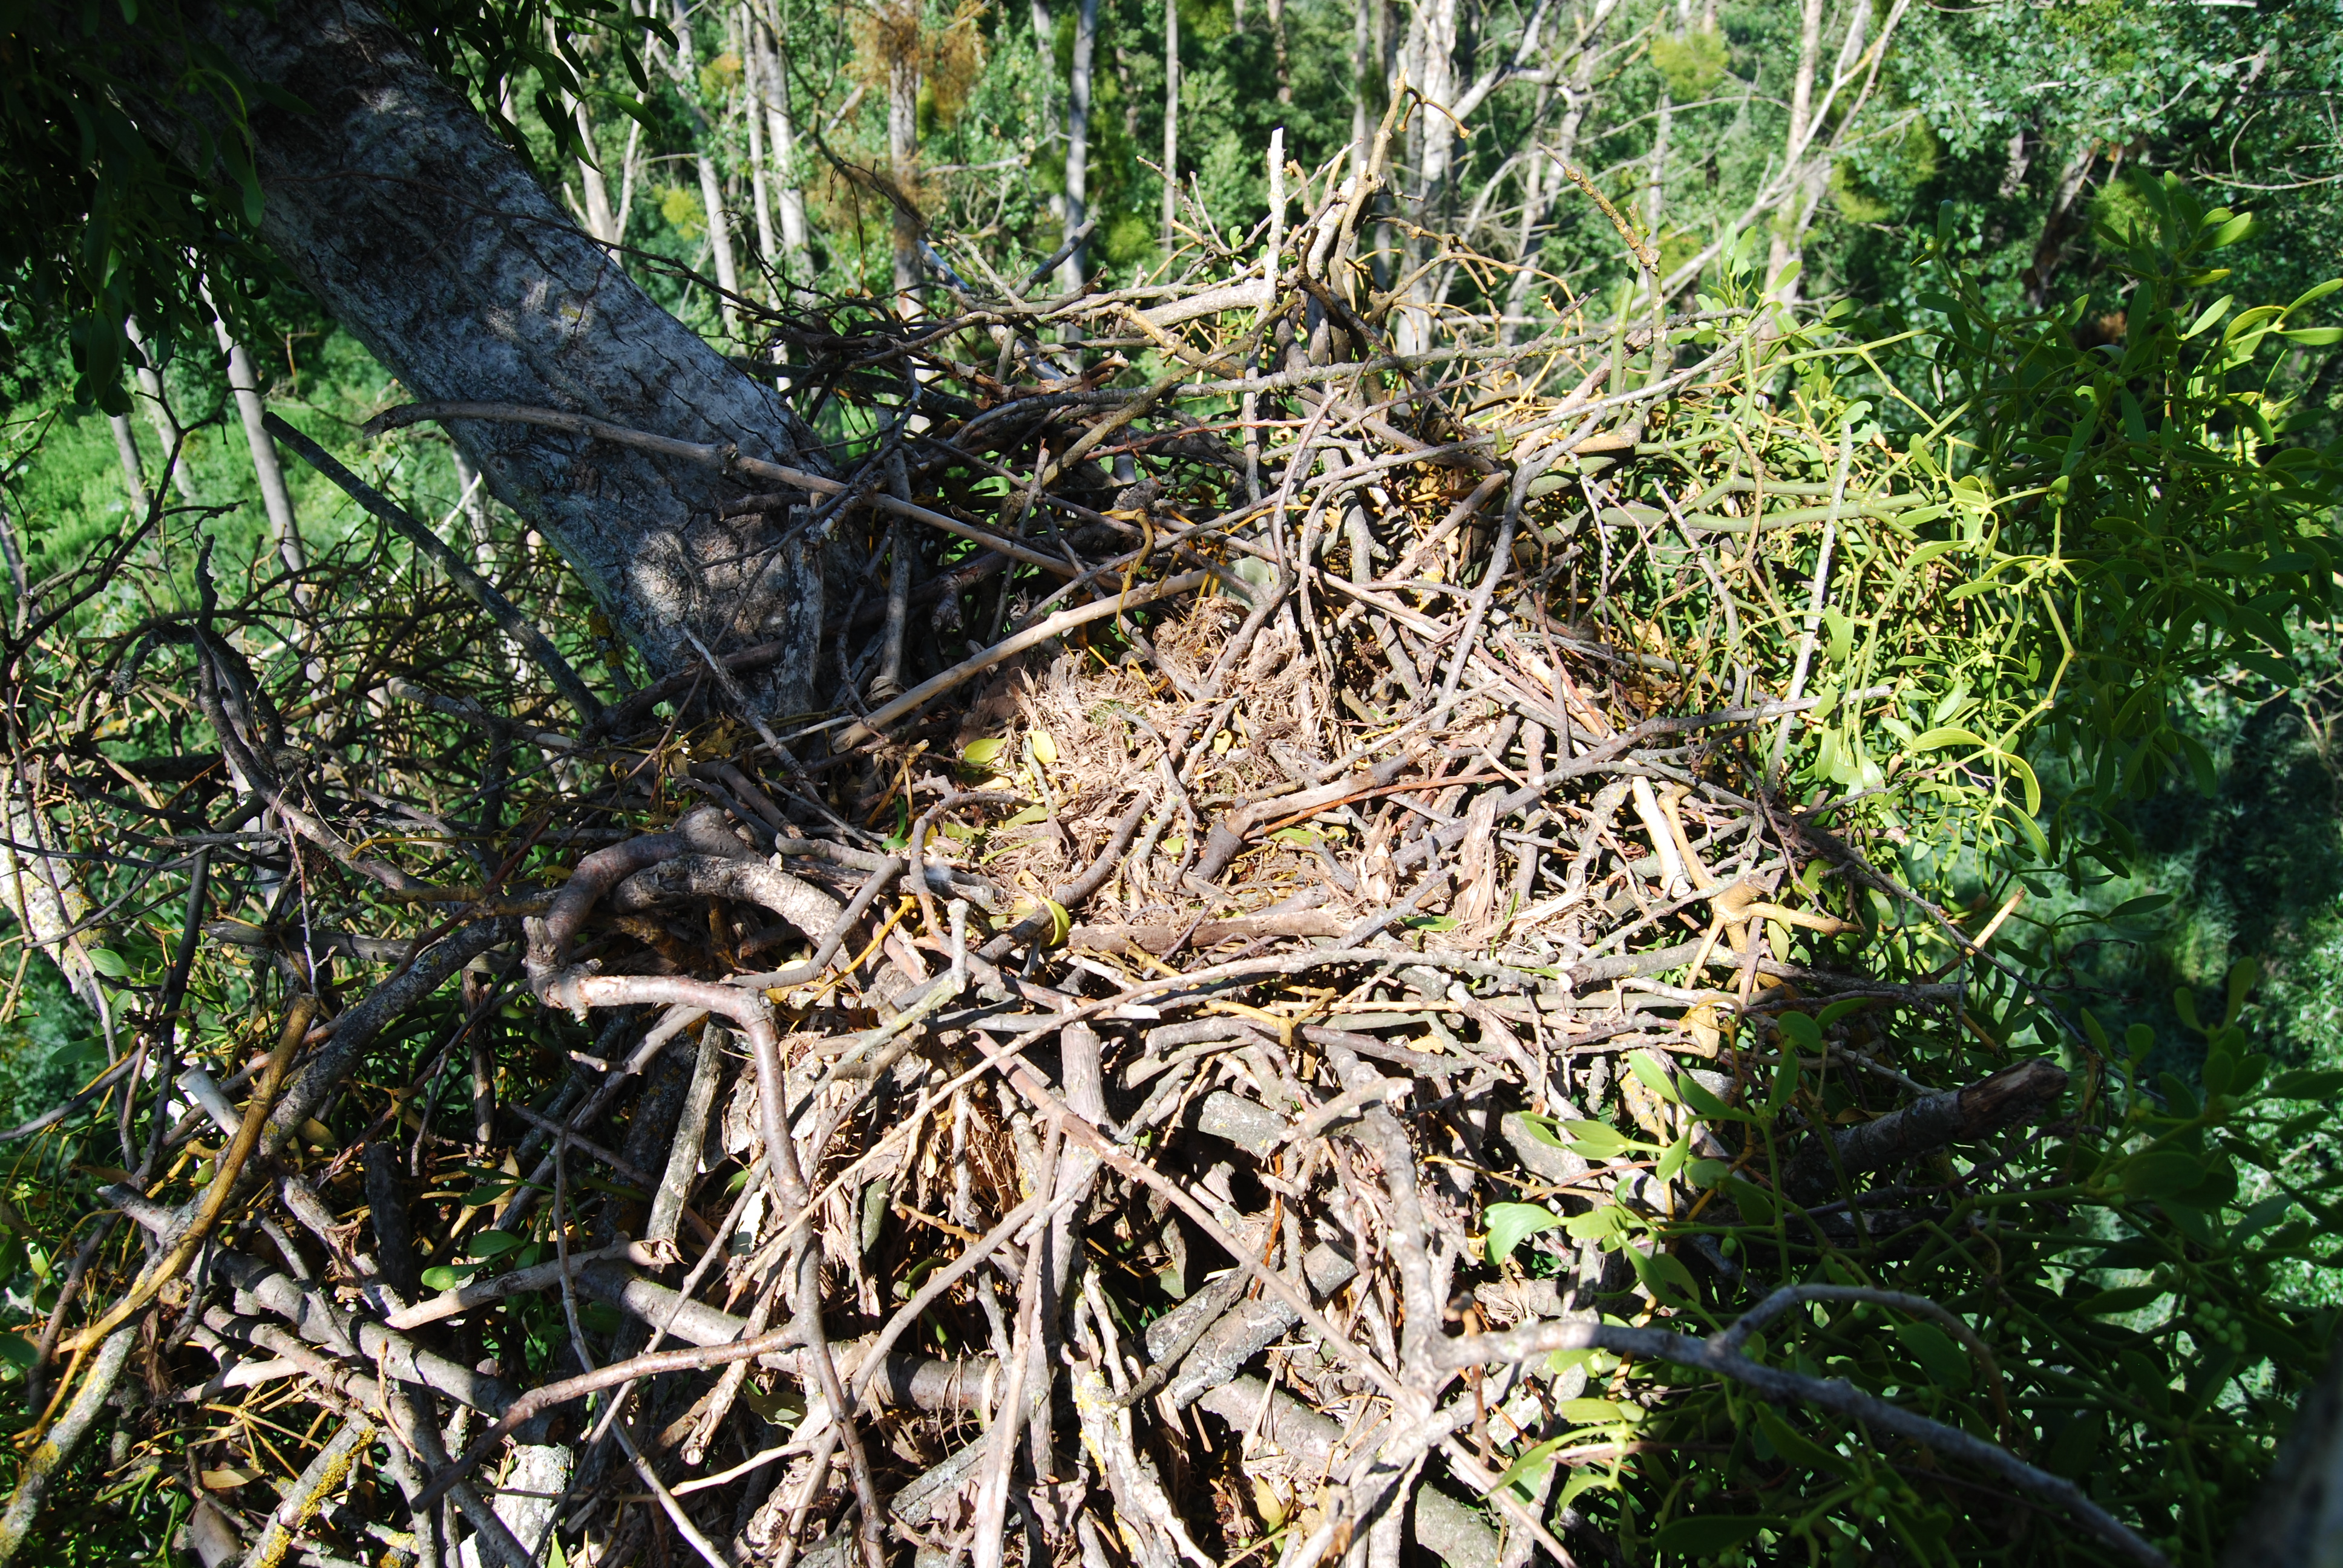 Jeden z hnízdních párů orlů královských v roce 2018 postavil hnízdo s pouhým náznakem hnízdní kotlinky, ale samice z tohoto páru vejce nesnesla. Foto: Hynek Matušík